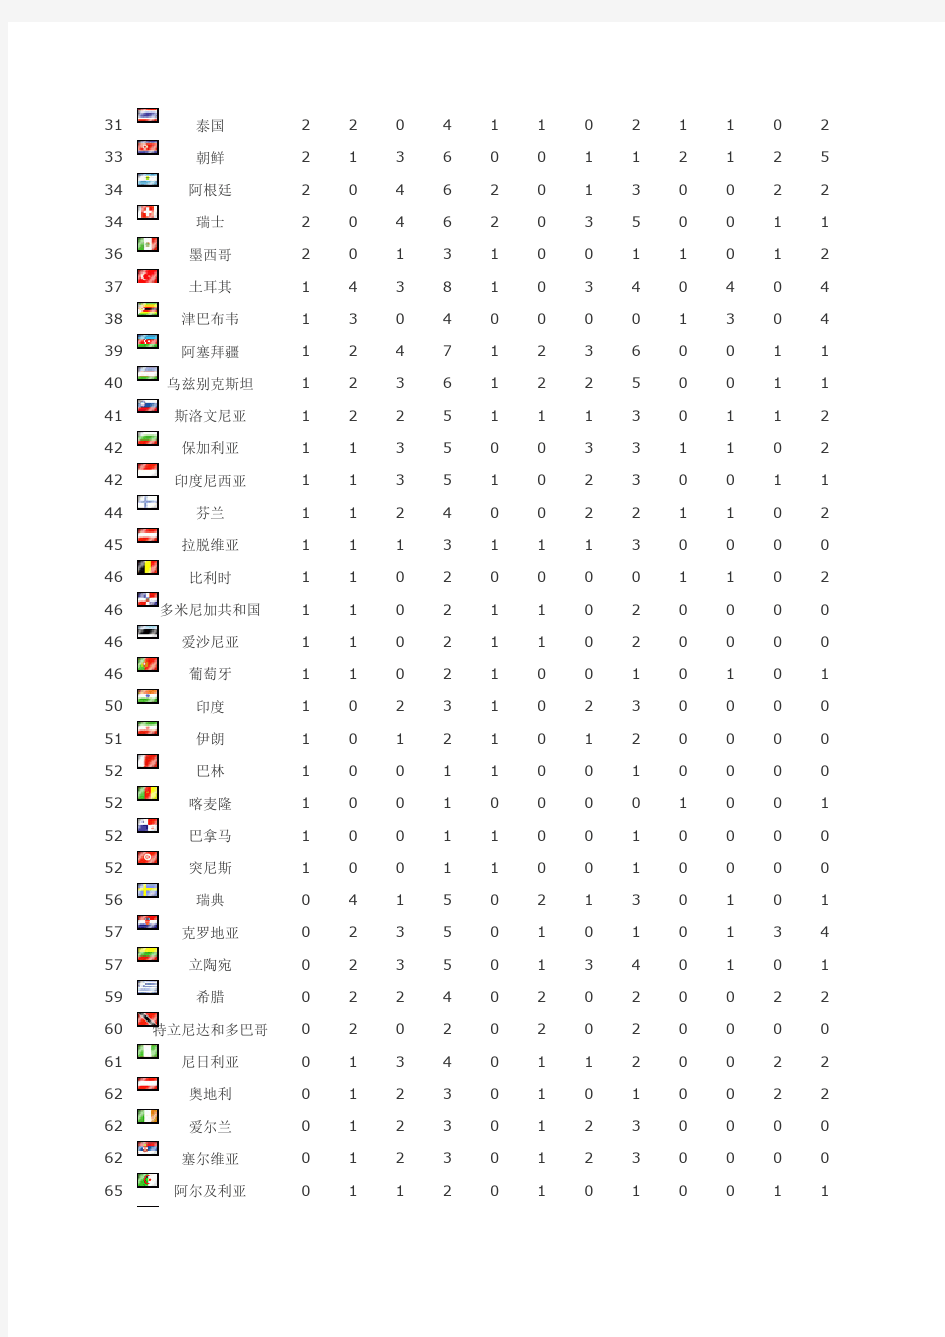 2008年北京奥运会奖牌统计表